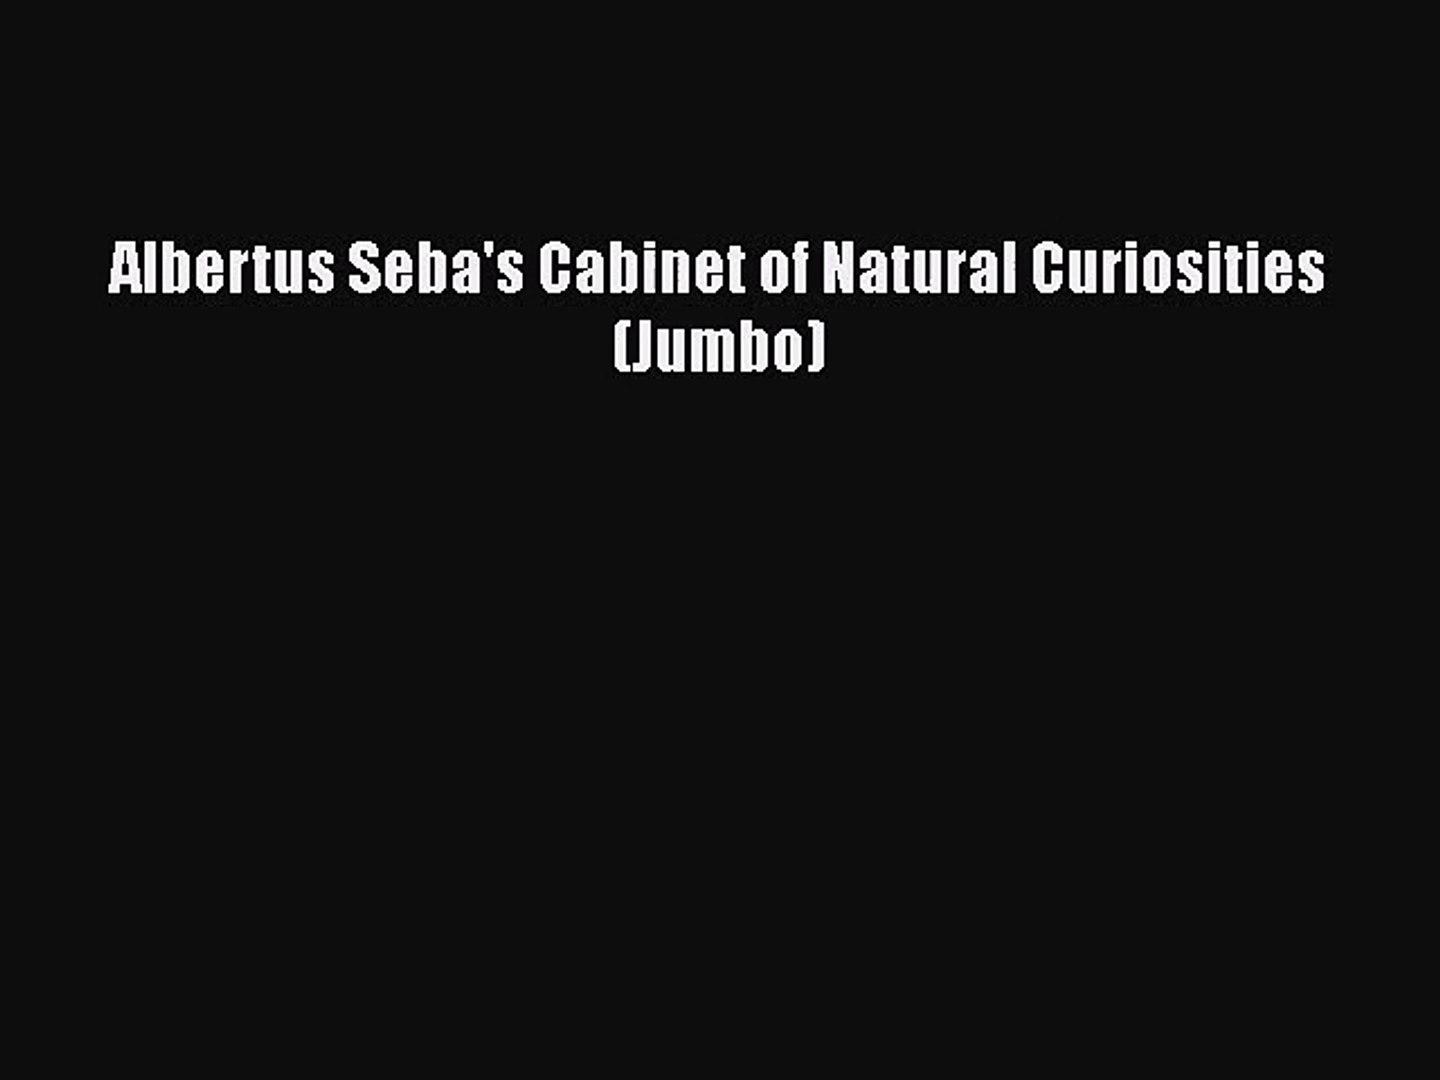 Pdf Download Albertus Seba S Cabinet Of Natural Curiosities Jumbo